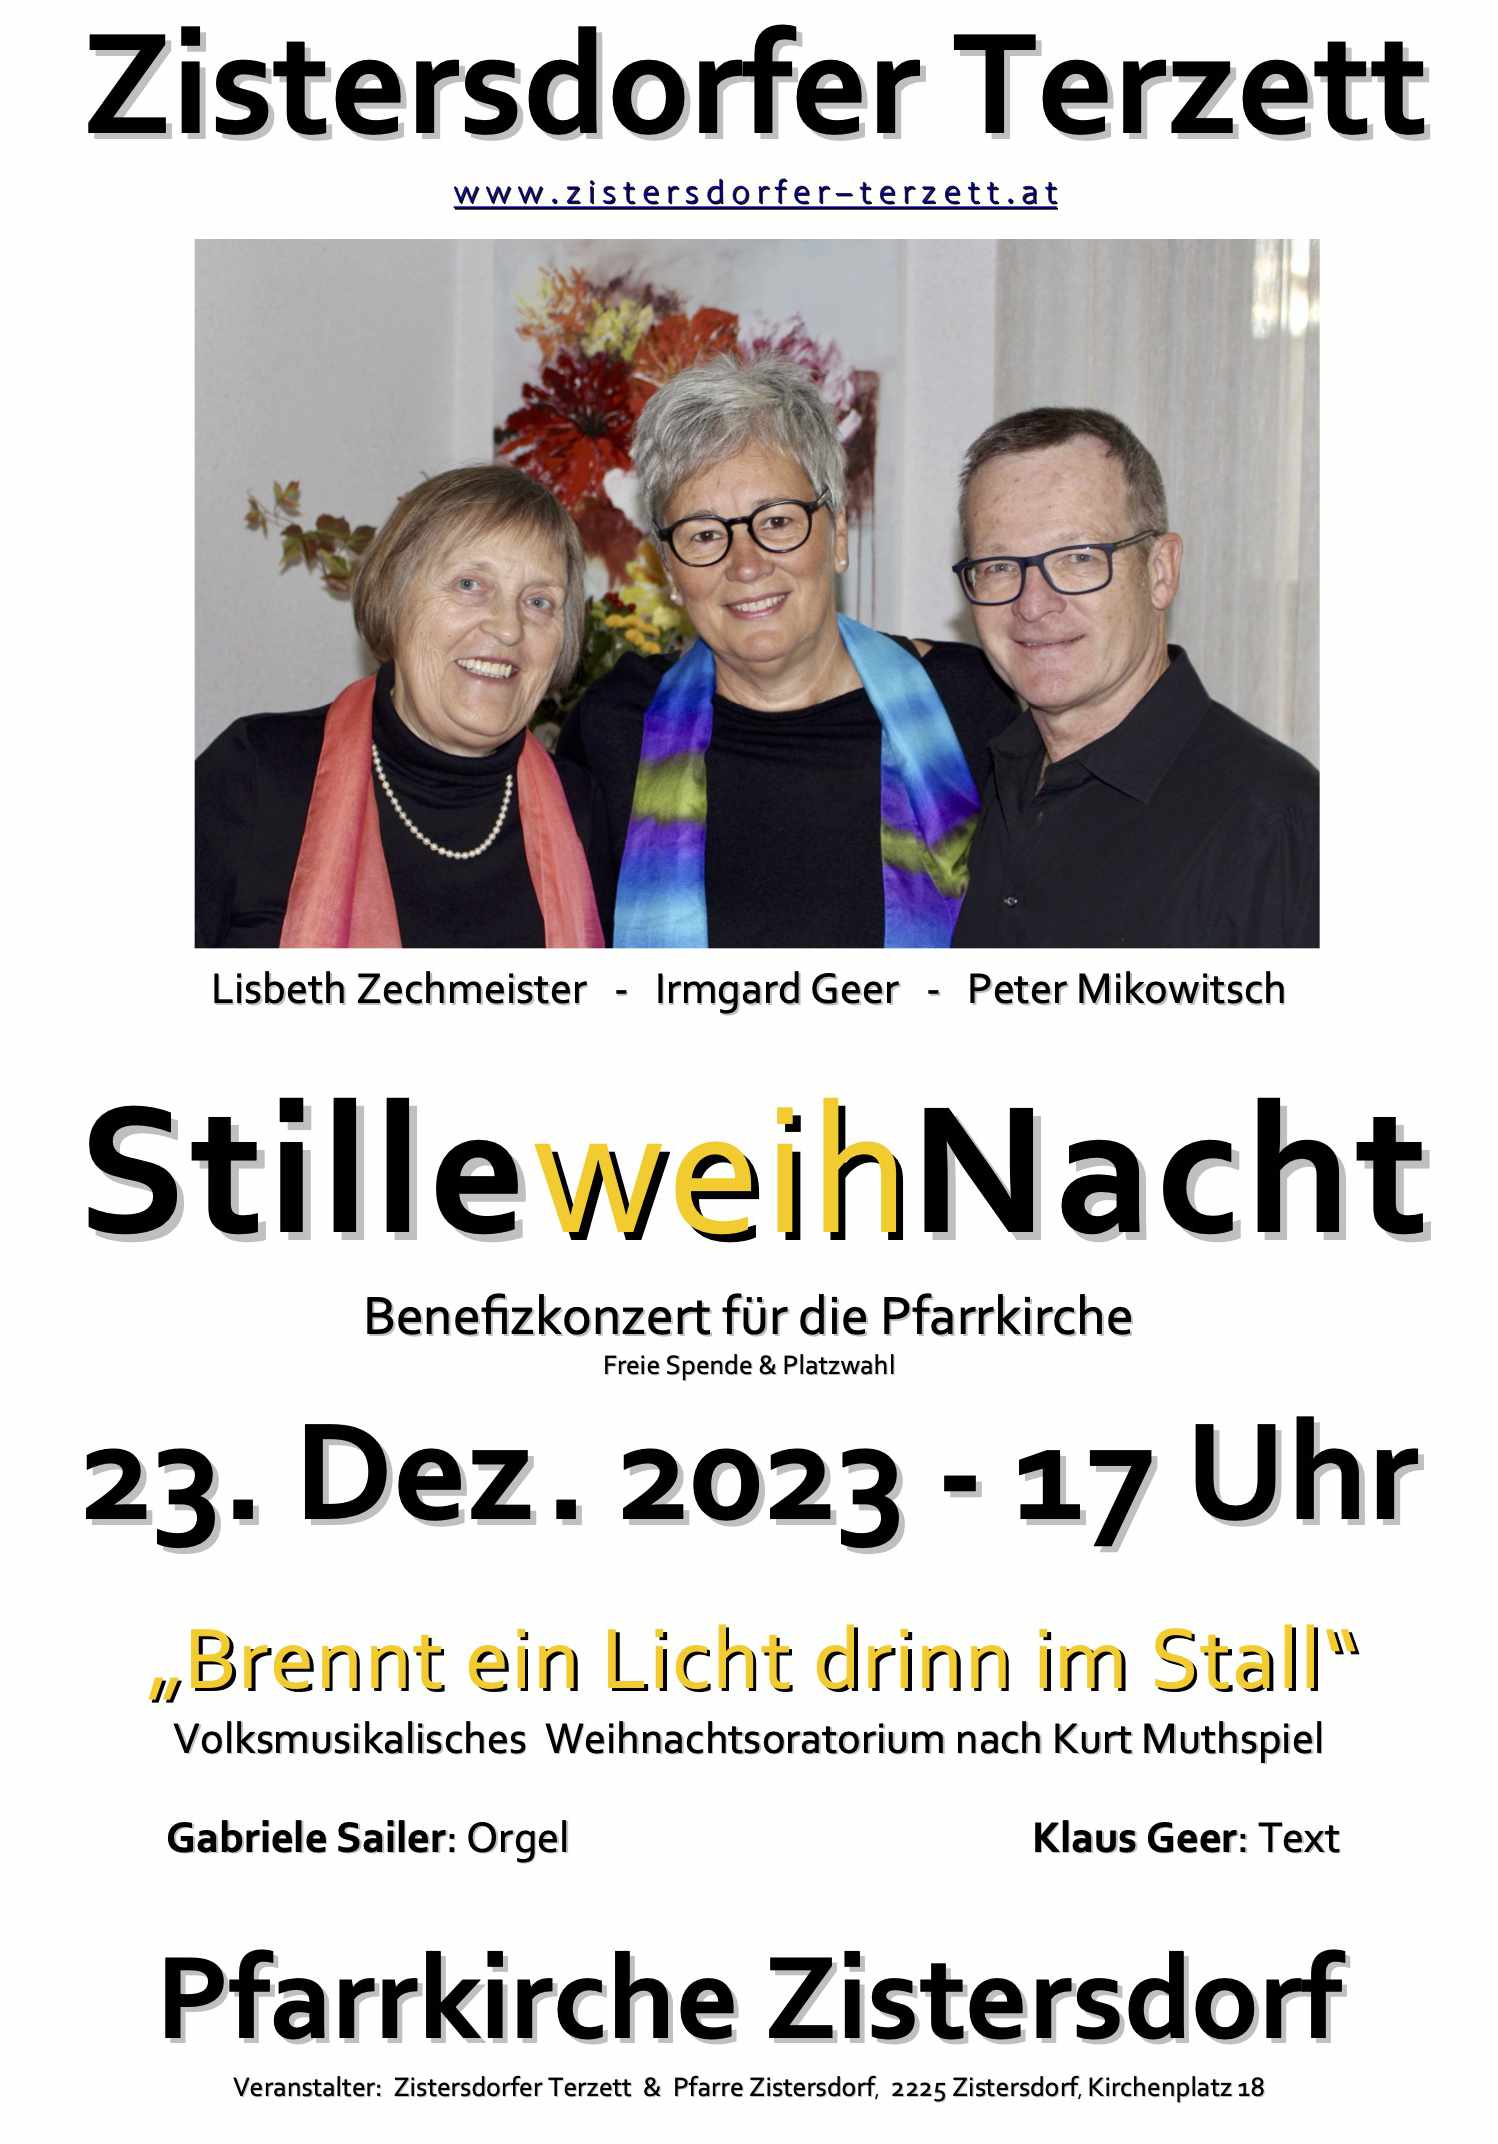 STILLEweihNACHT 2023   Plakat